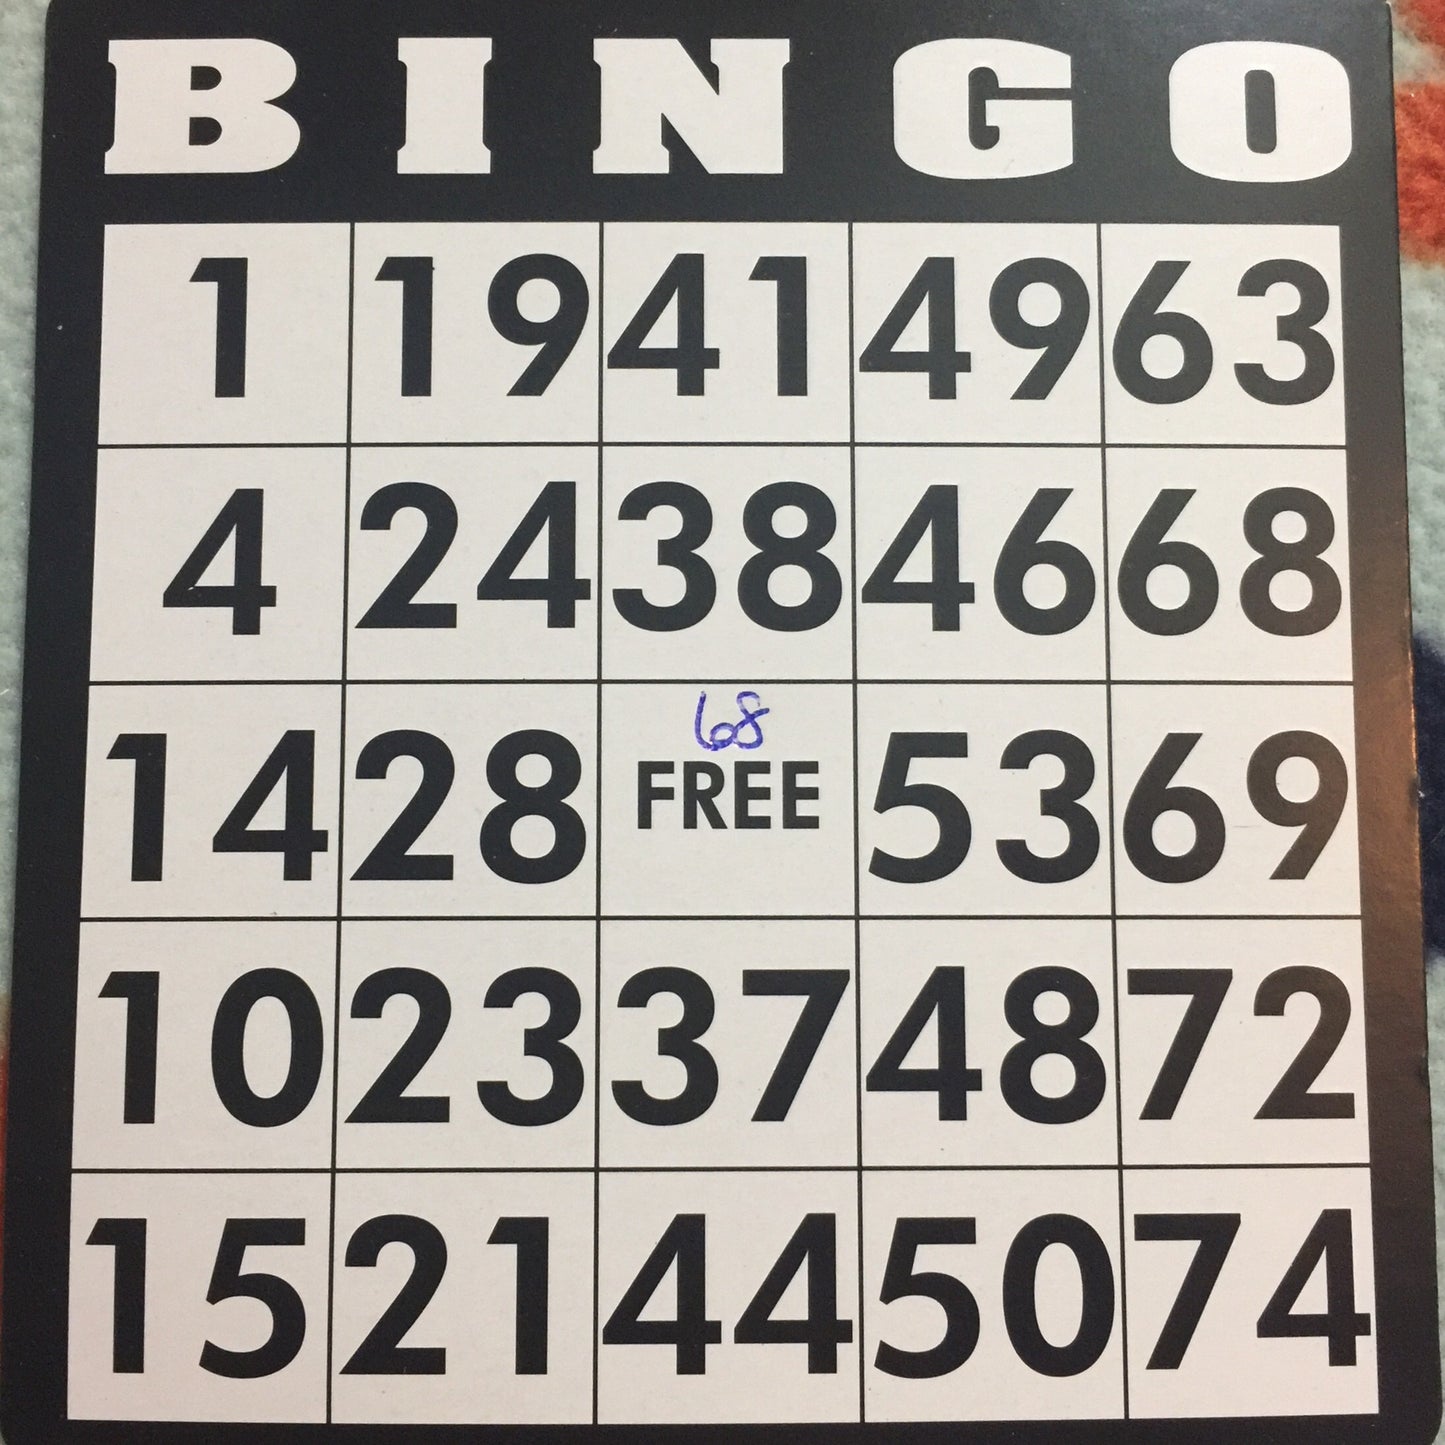 Game, Bingo: 9/19 at 3pm EST